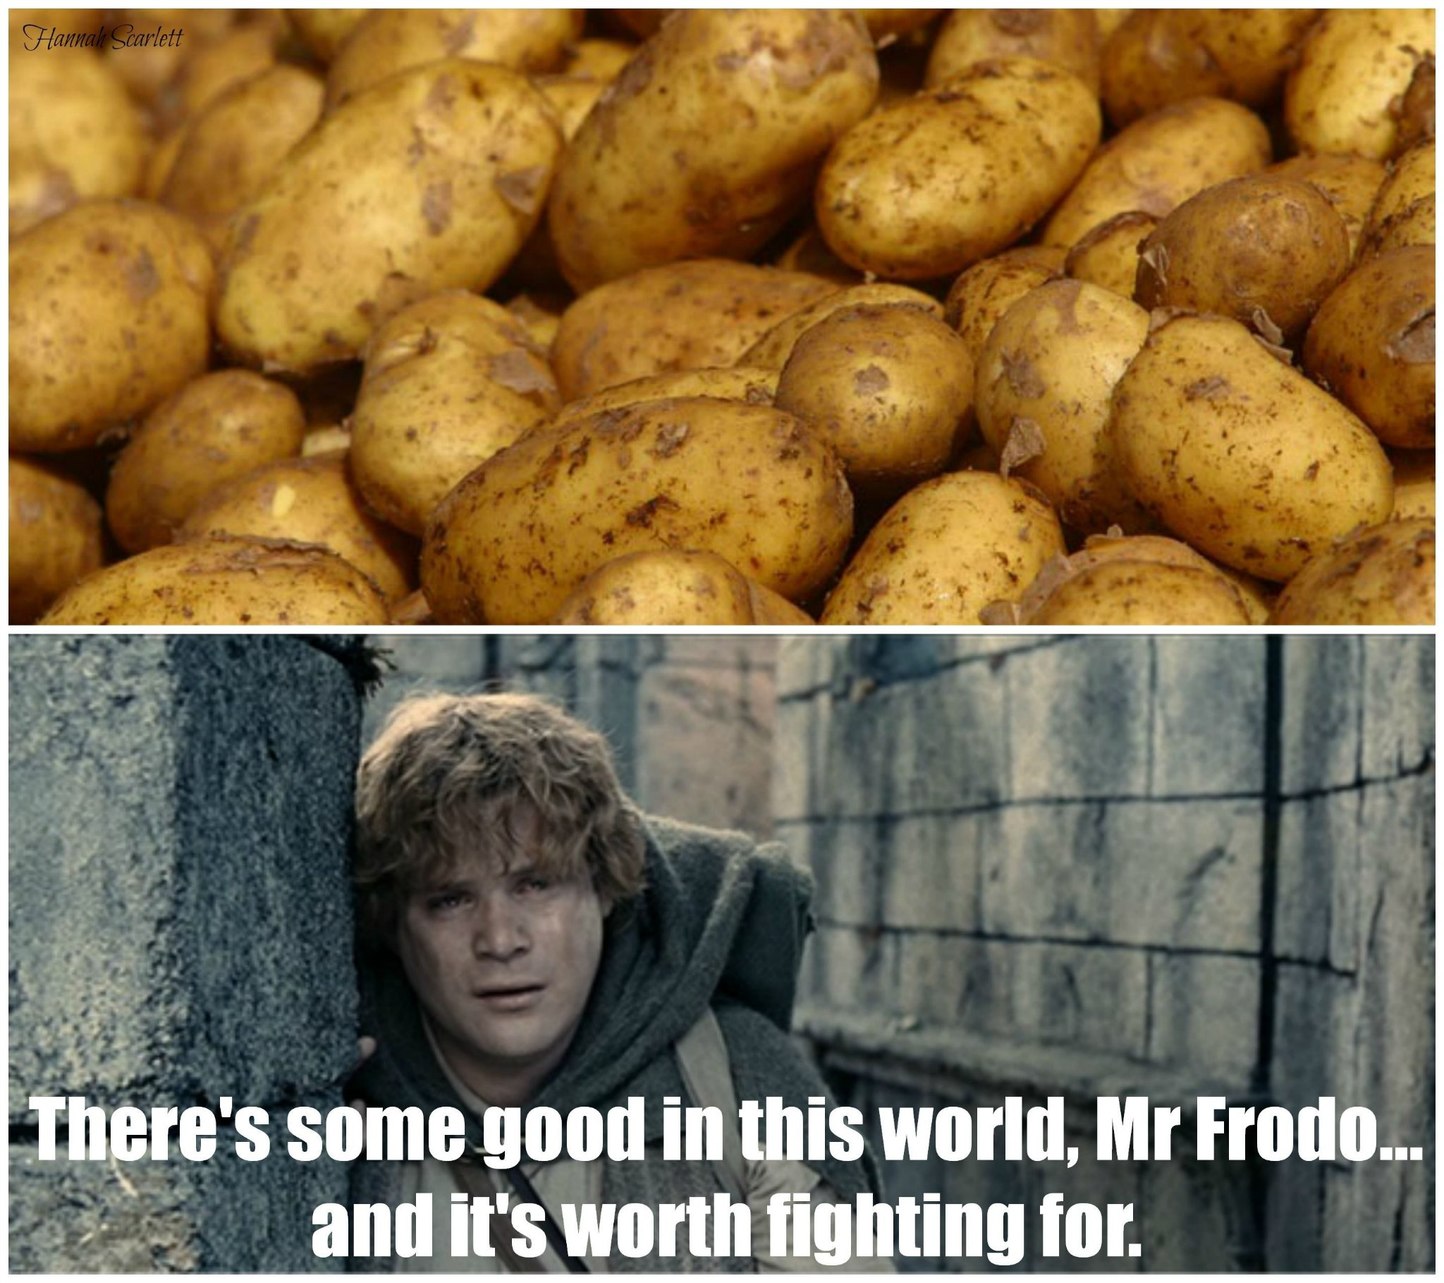 Baked potato is good - meme